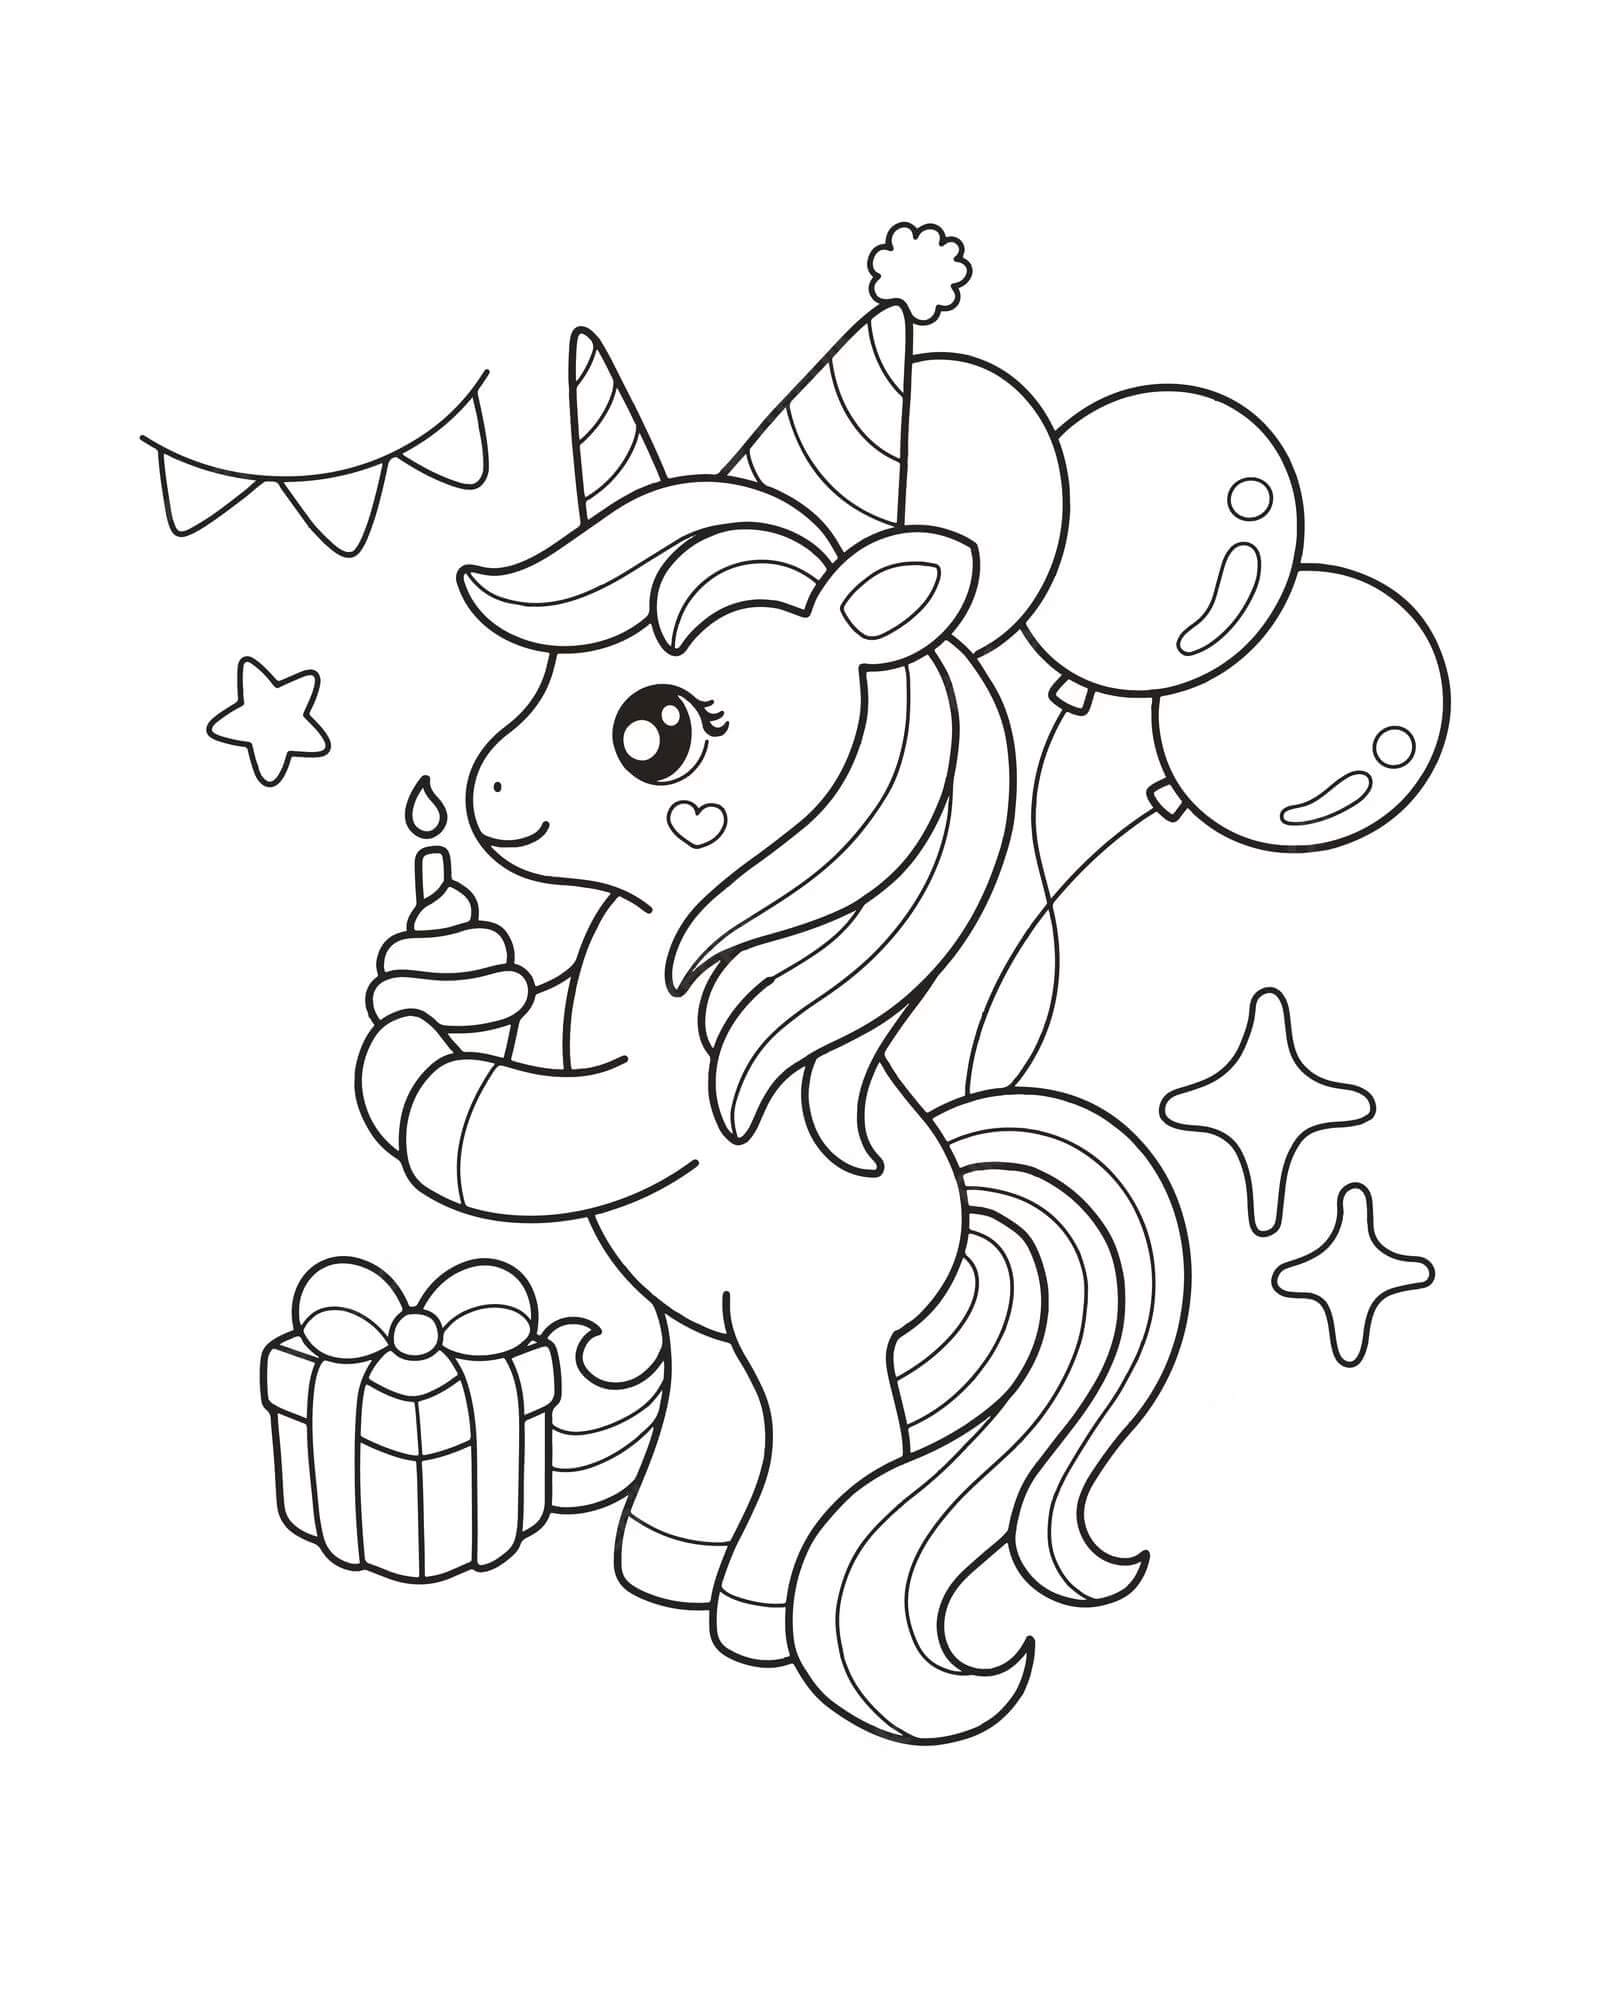 Dibujos de Unicornio De Dibujos Animados En Fiesta De Cumpleaños para colorear